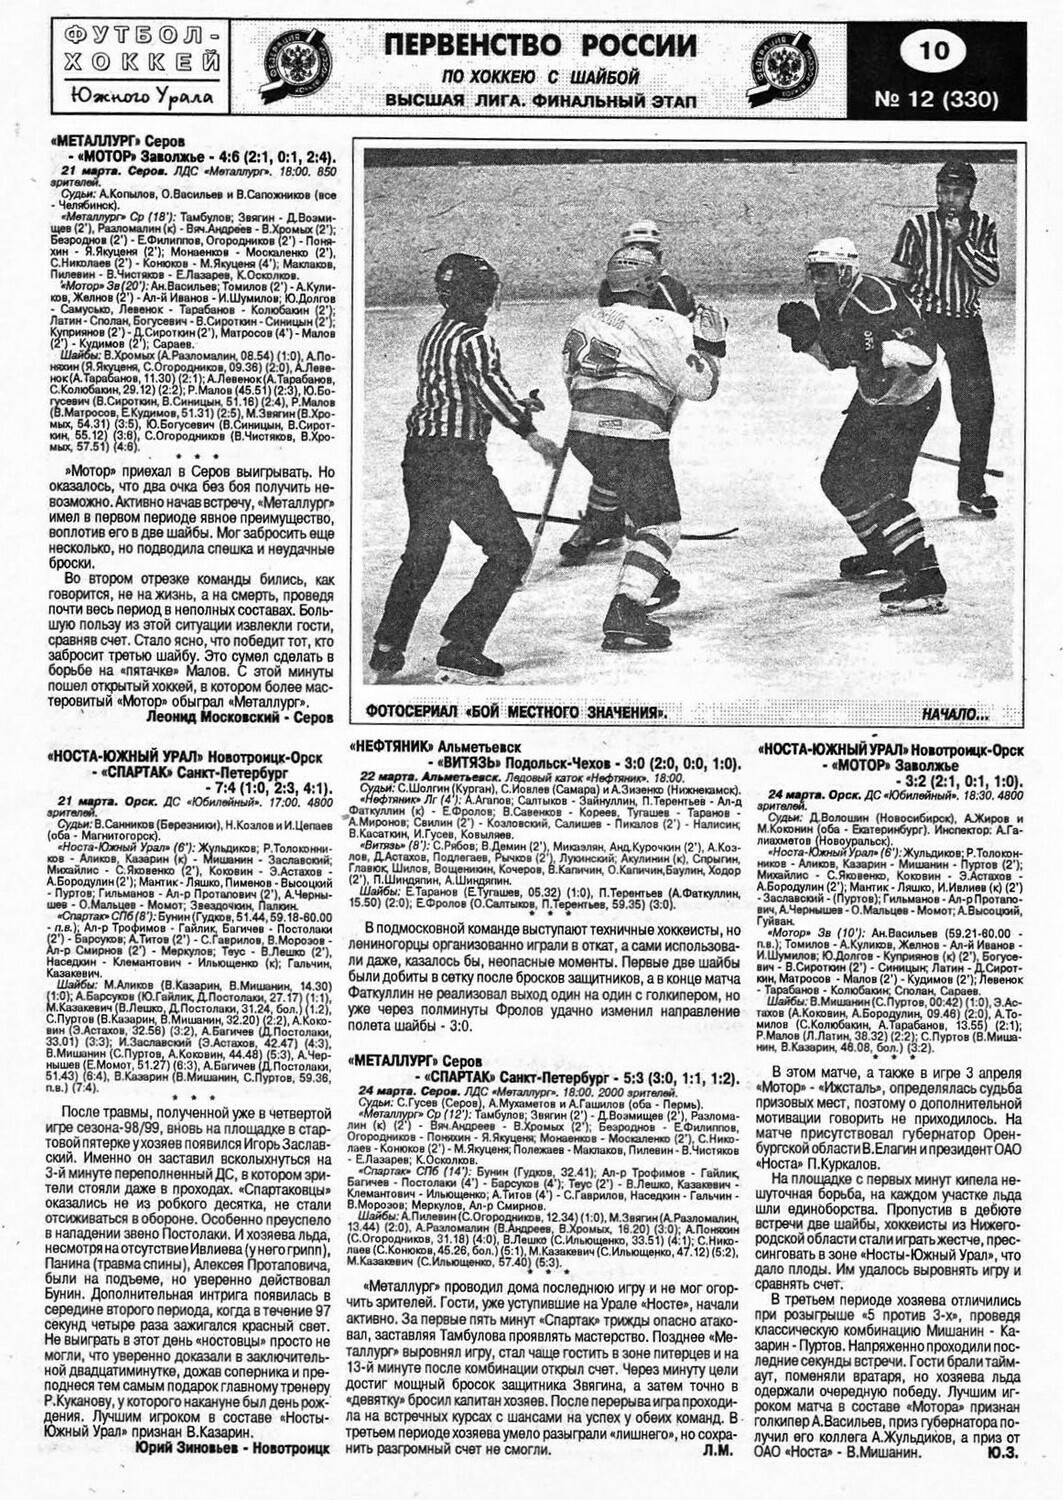 Еженедельник "Футбол-Хоккей ЮУ" от 1999г.